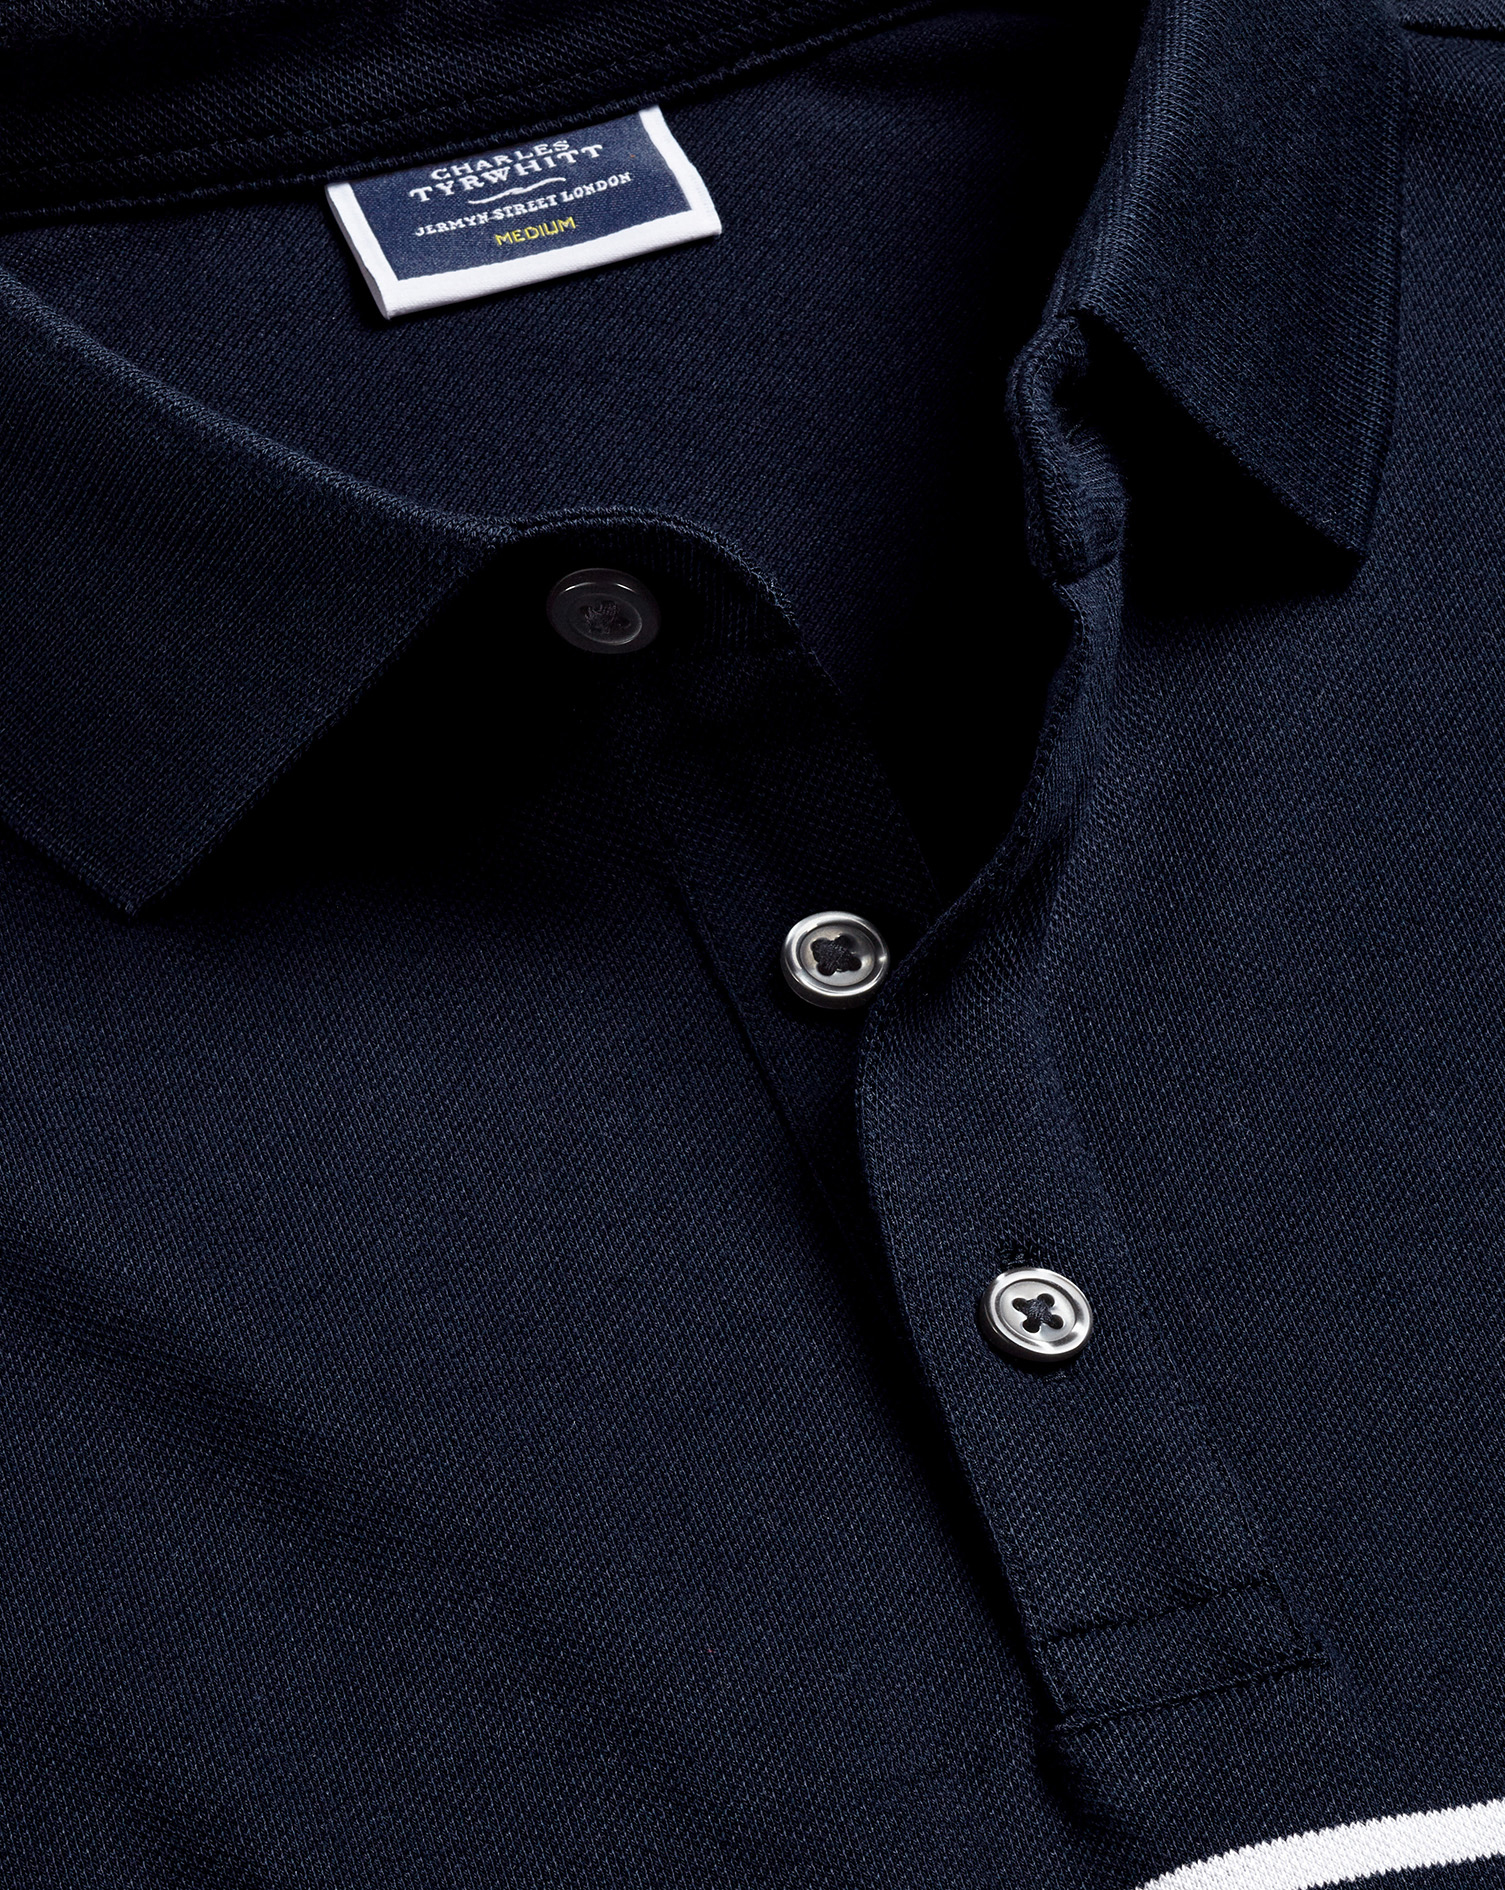 Men's Charles Tyrwhitt Breton Stripe Tyrwhitt Pique Polo Shirt - Navy & White Blue Size Large Cotton